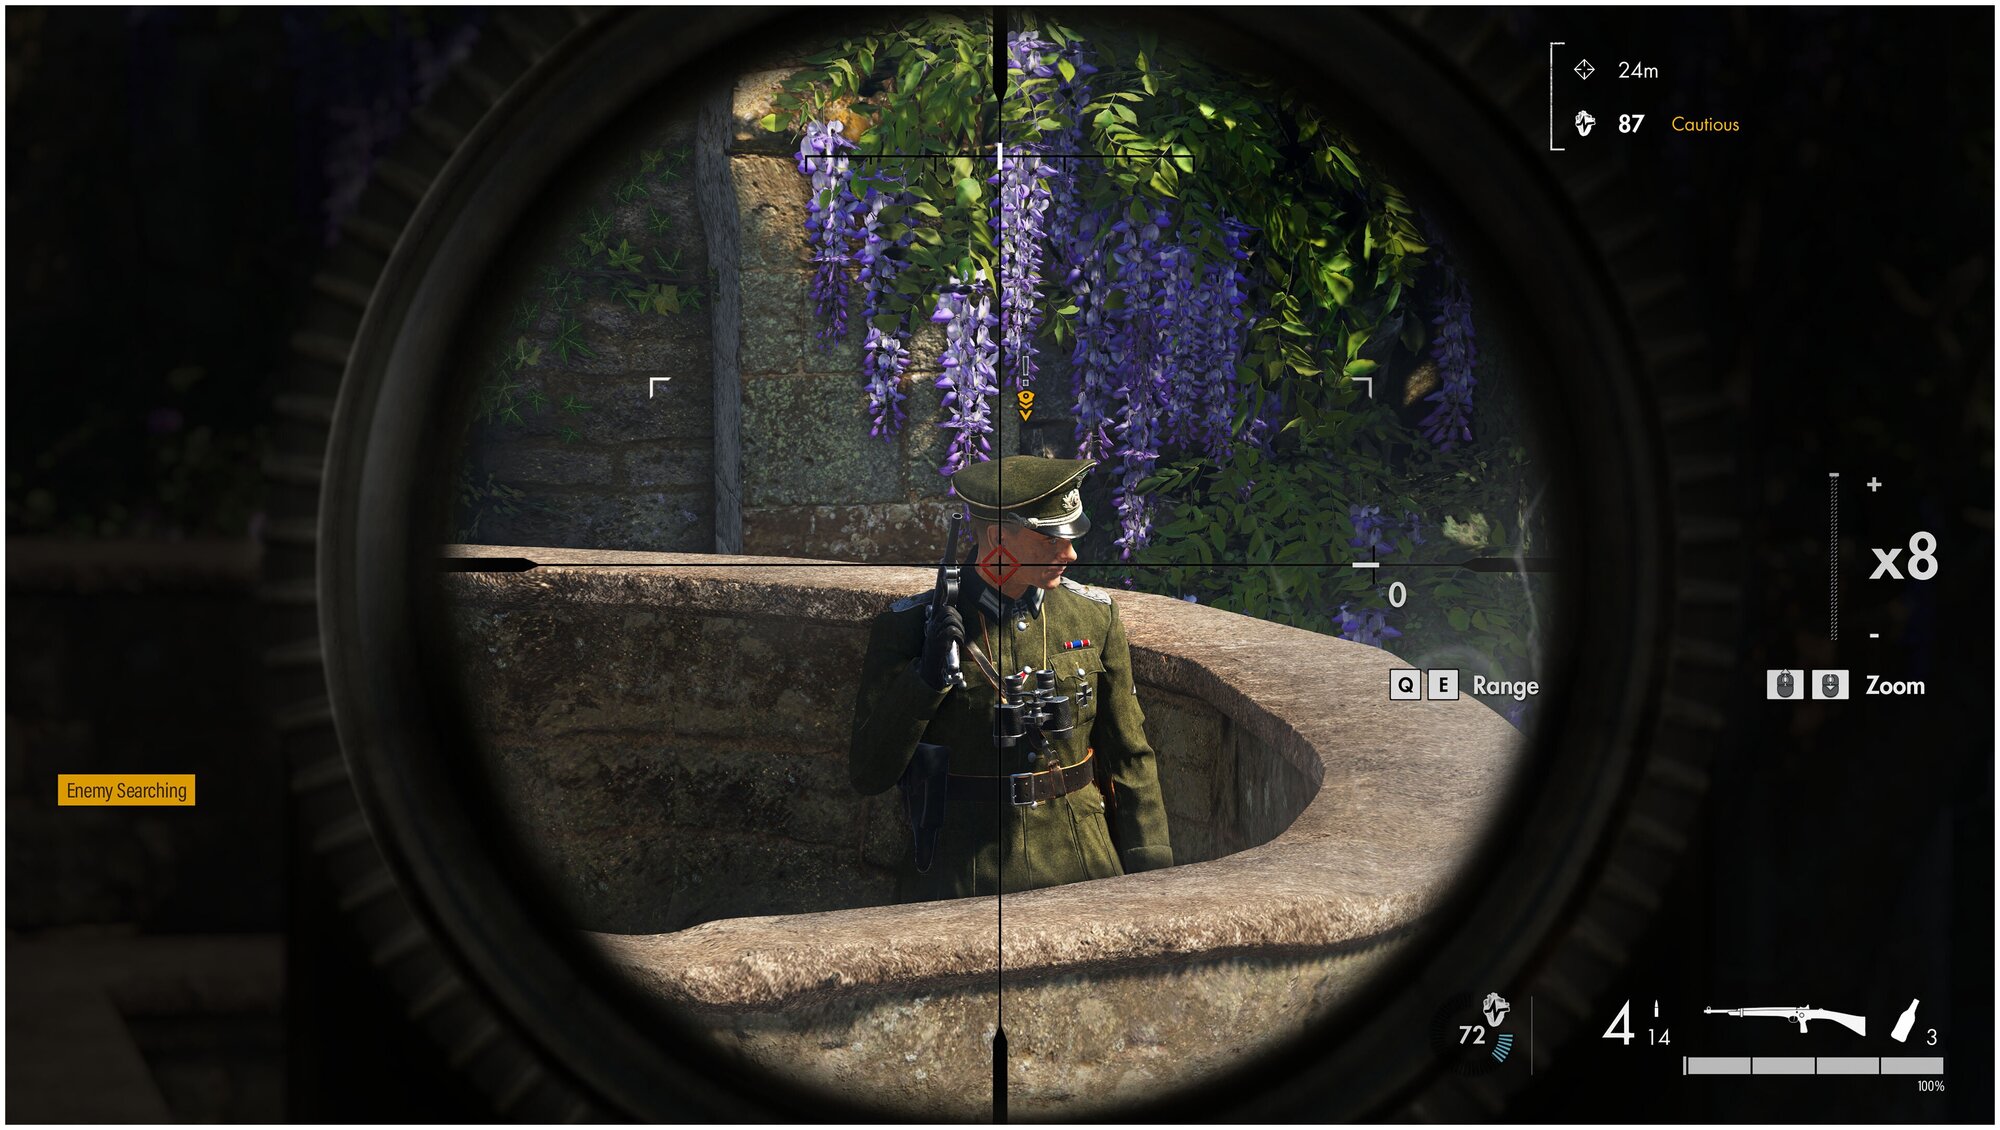 Игра PS4 - Sniper Elite 5 (русские субтитры)